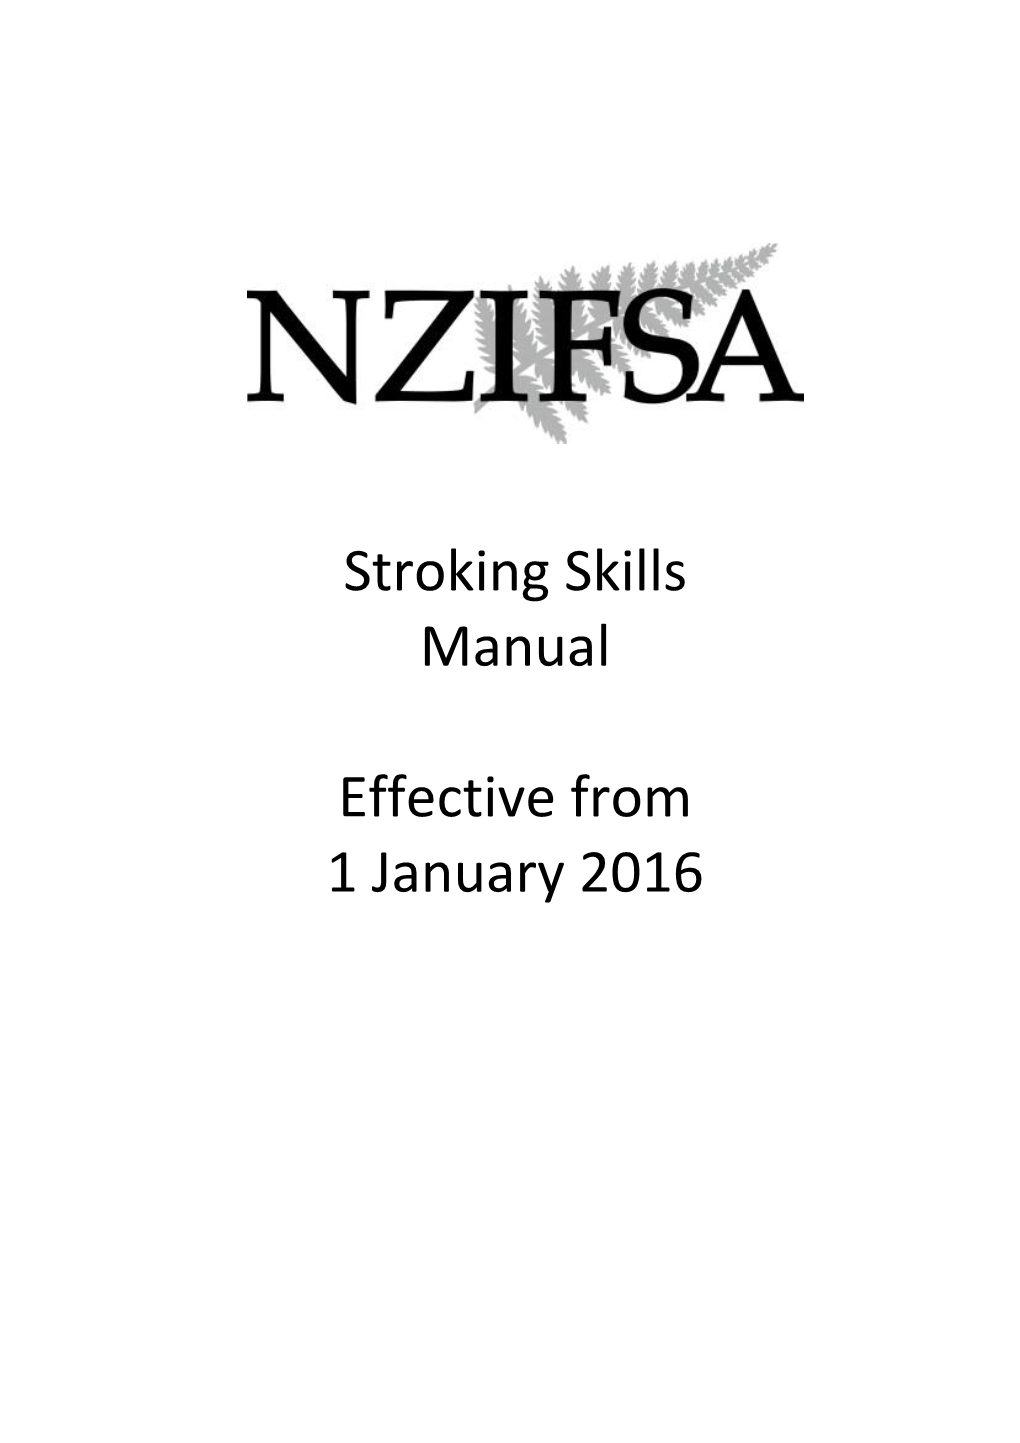 NZIFSA Stroking Skills Manual